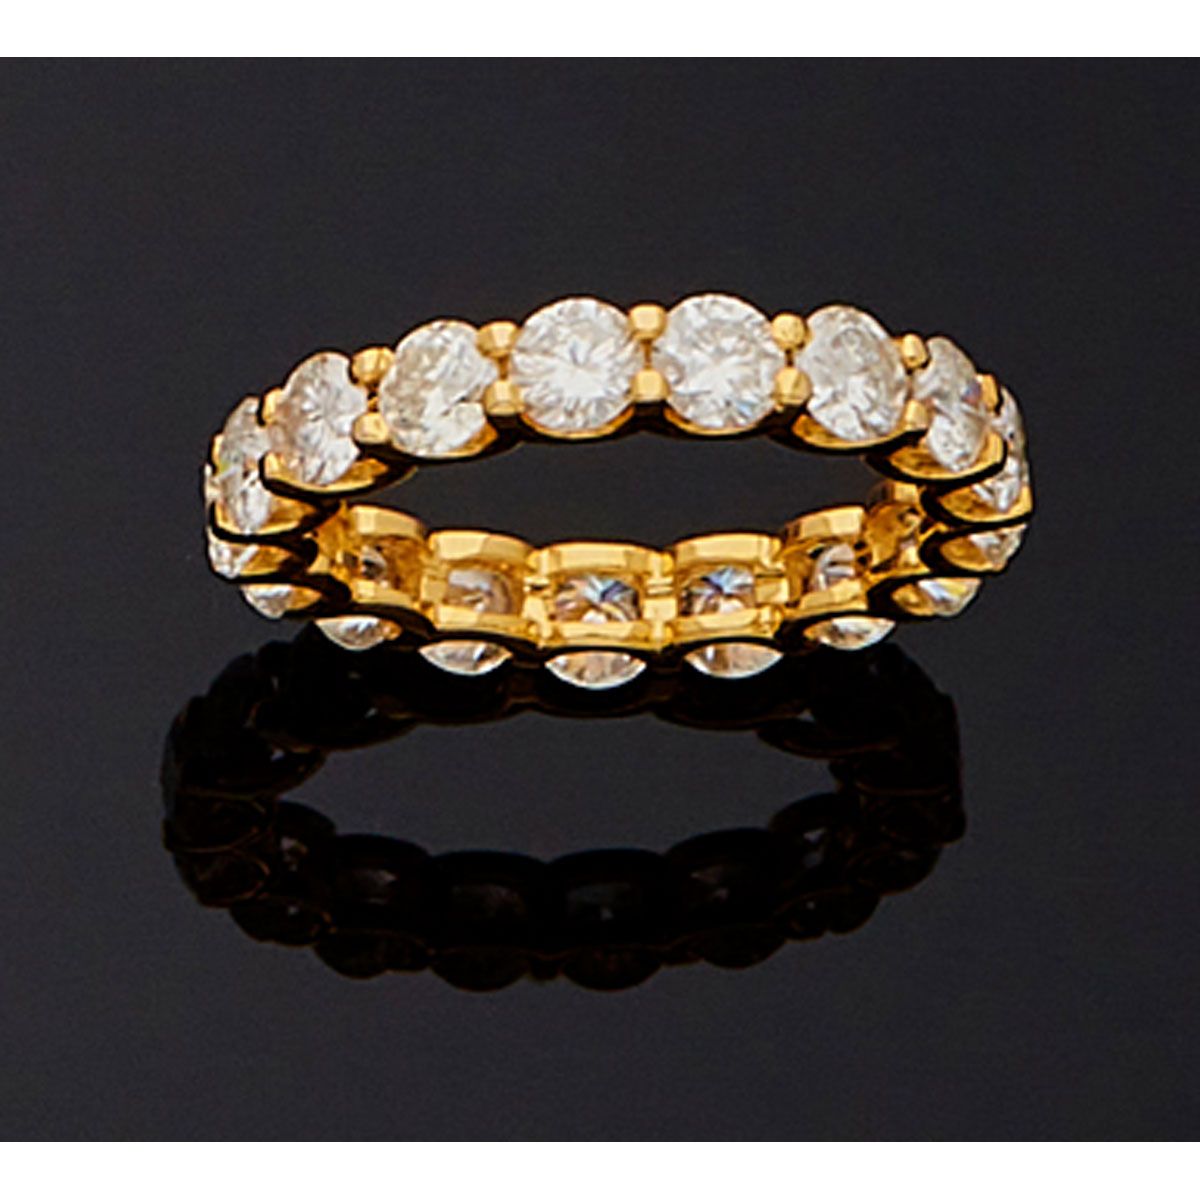 Null Ehering aus 18 K Gelbgold mit 17 Diamanten von je 0,23 Karat.

B.P. 3,45g. &hellip;